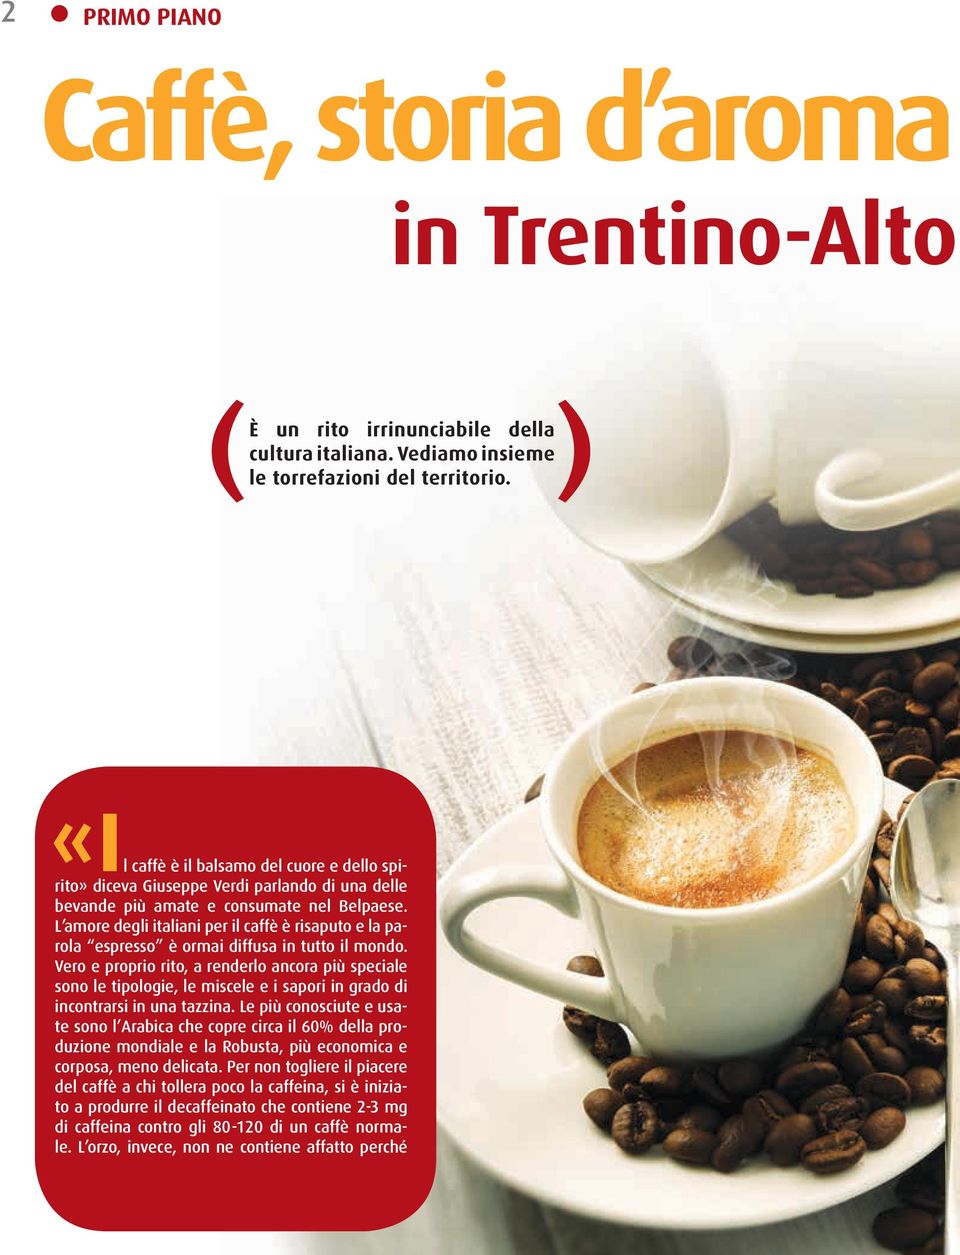 L amore degli italiani per il caffè è risaputo e la parola espresso è ormai diffusa in tutto il mondo.